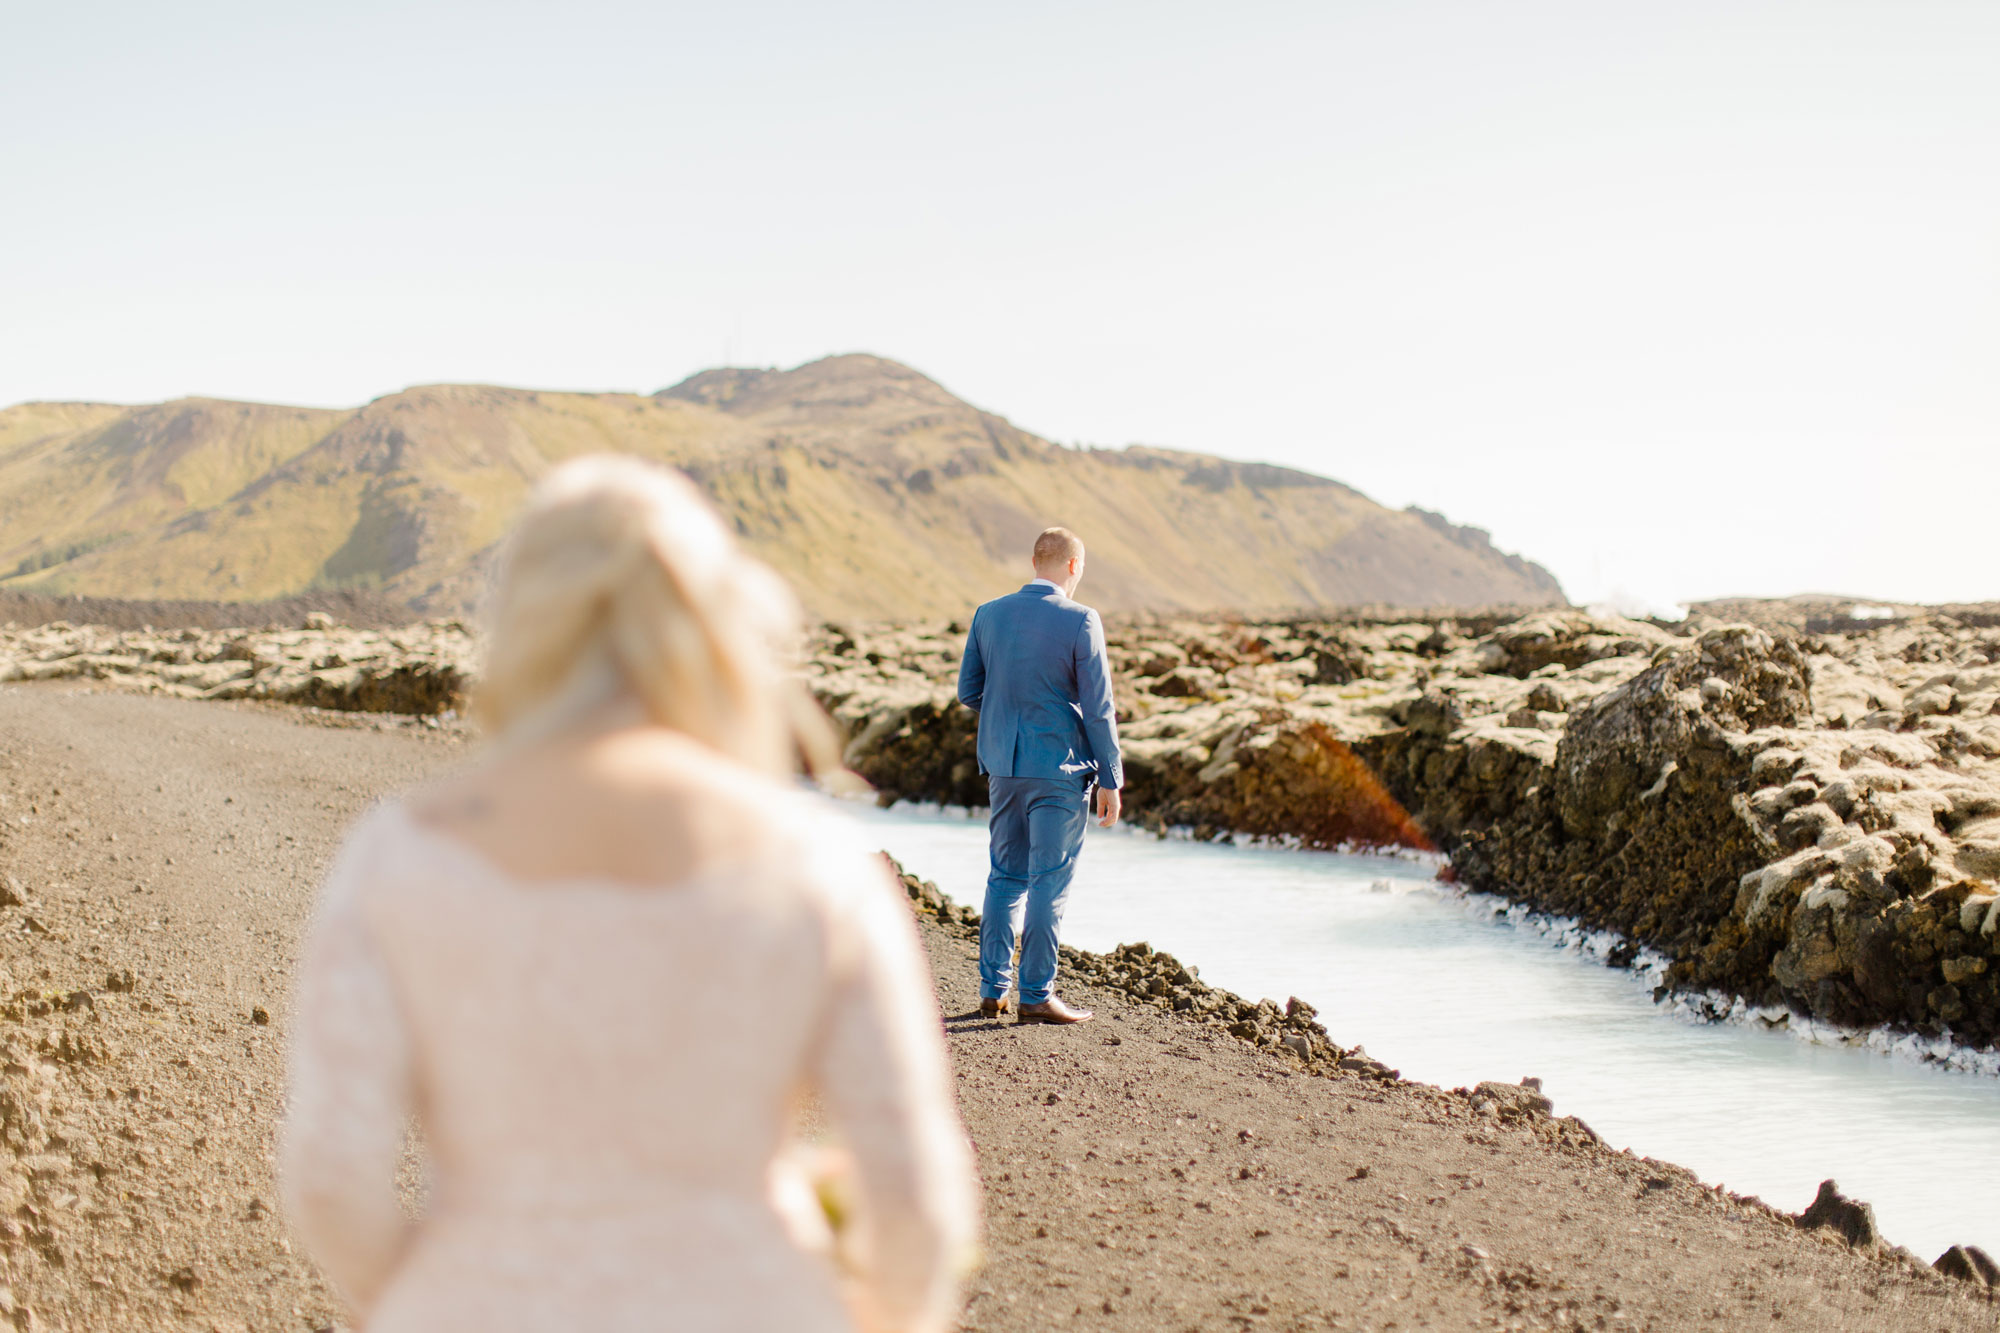 Iceland Destination Wedding